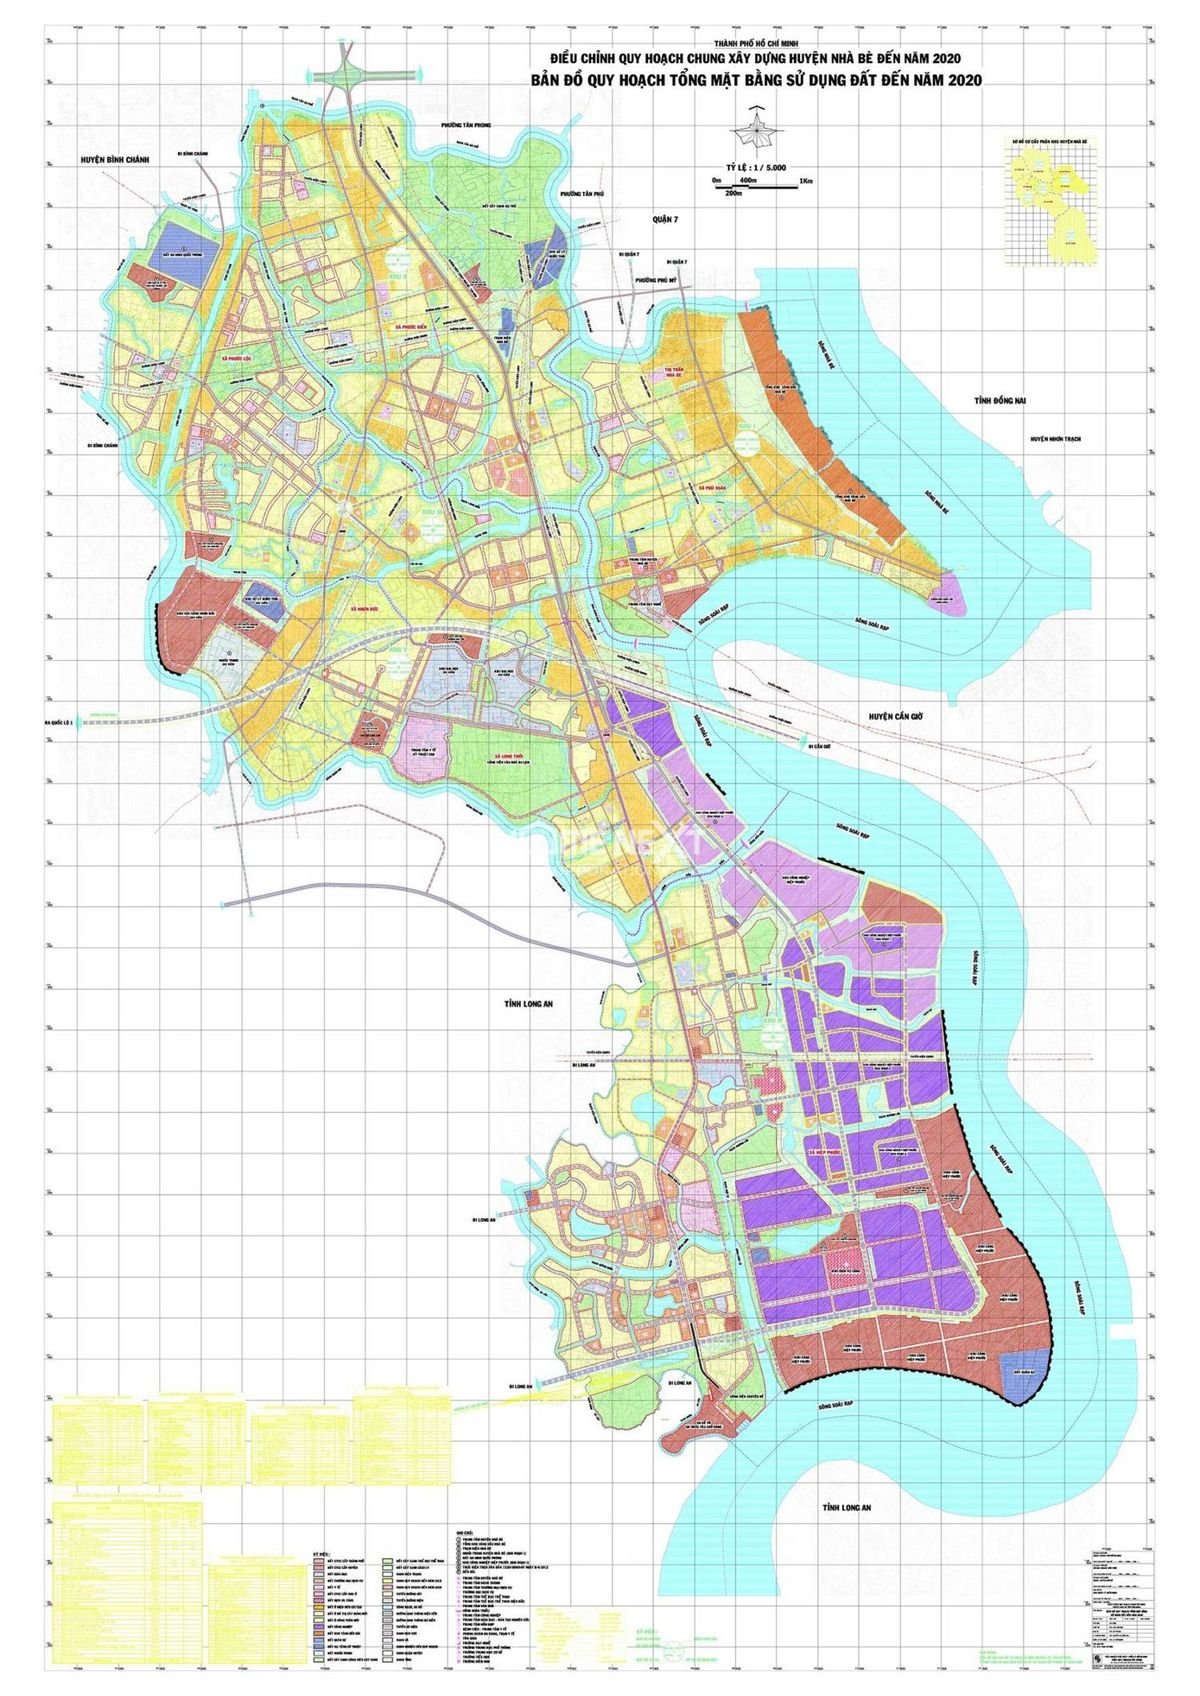 Bản đồ quy hoạch tổng mặt bằng sử dụng đất huyện Nhà Bè